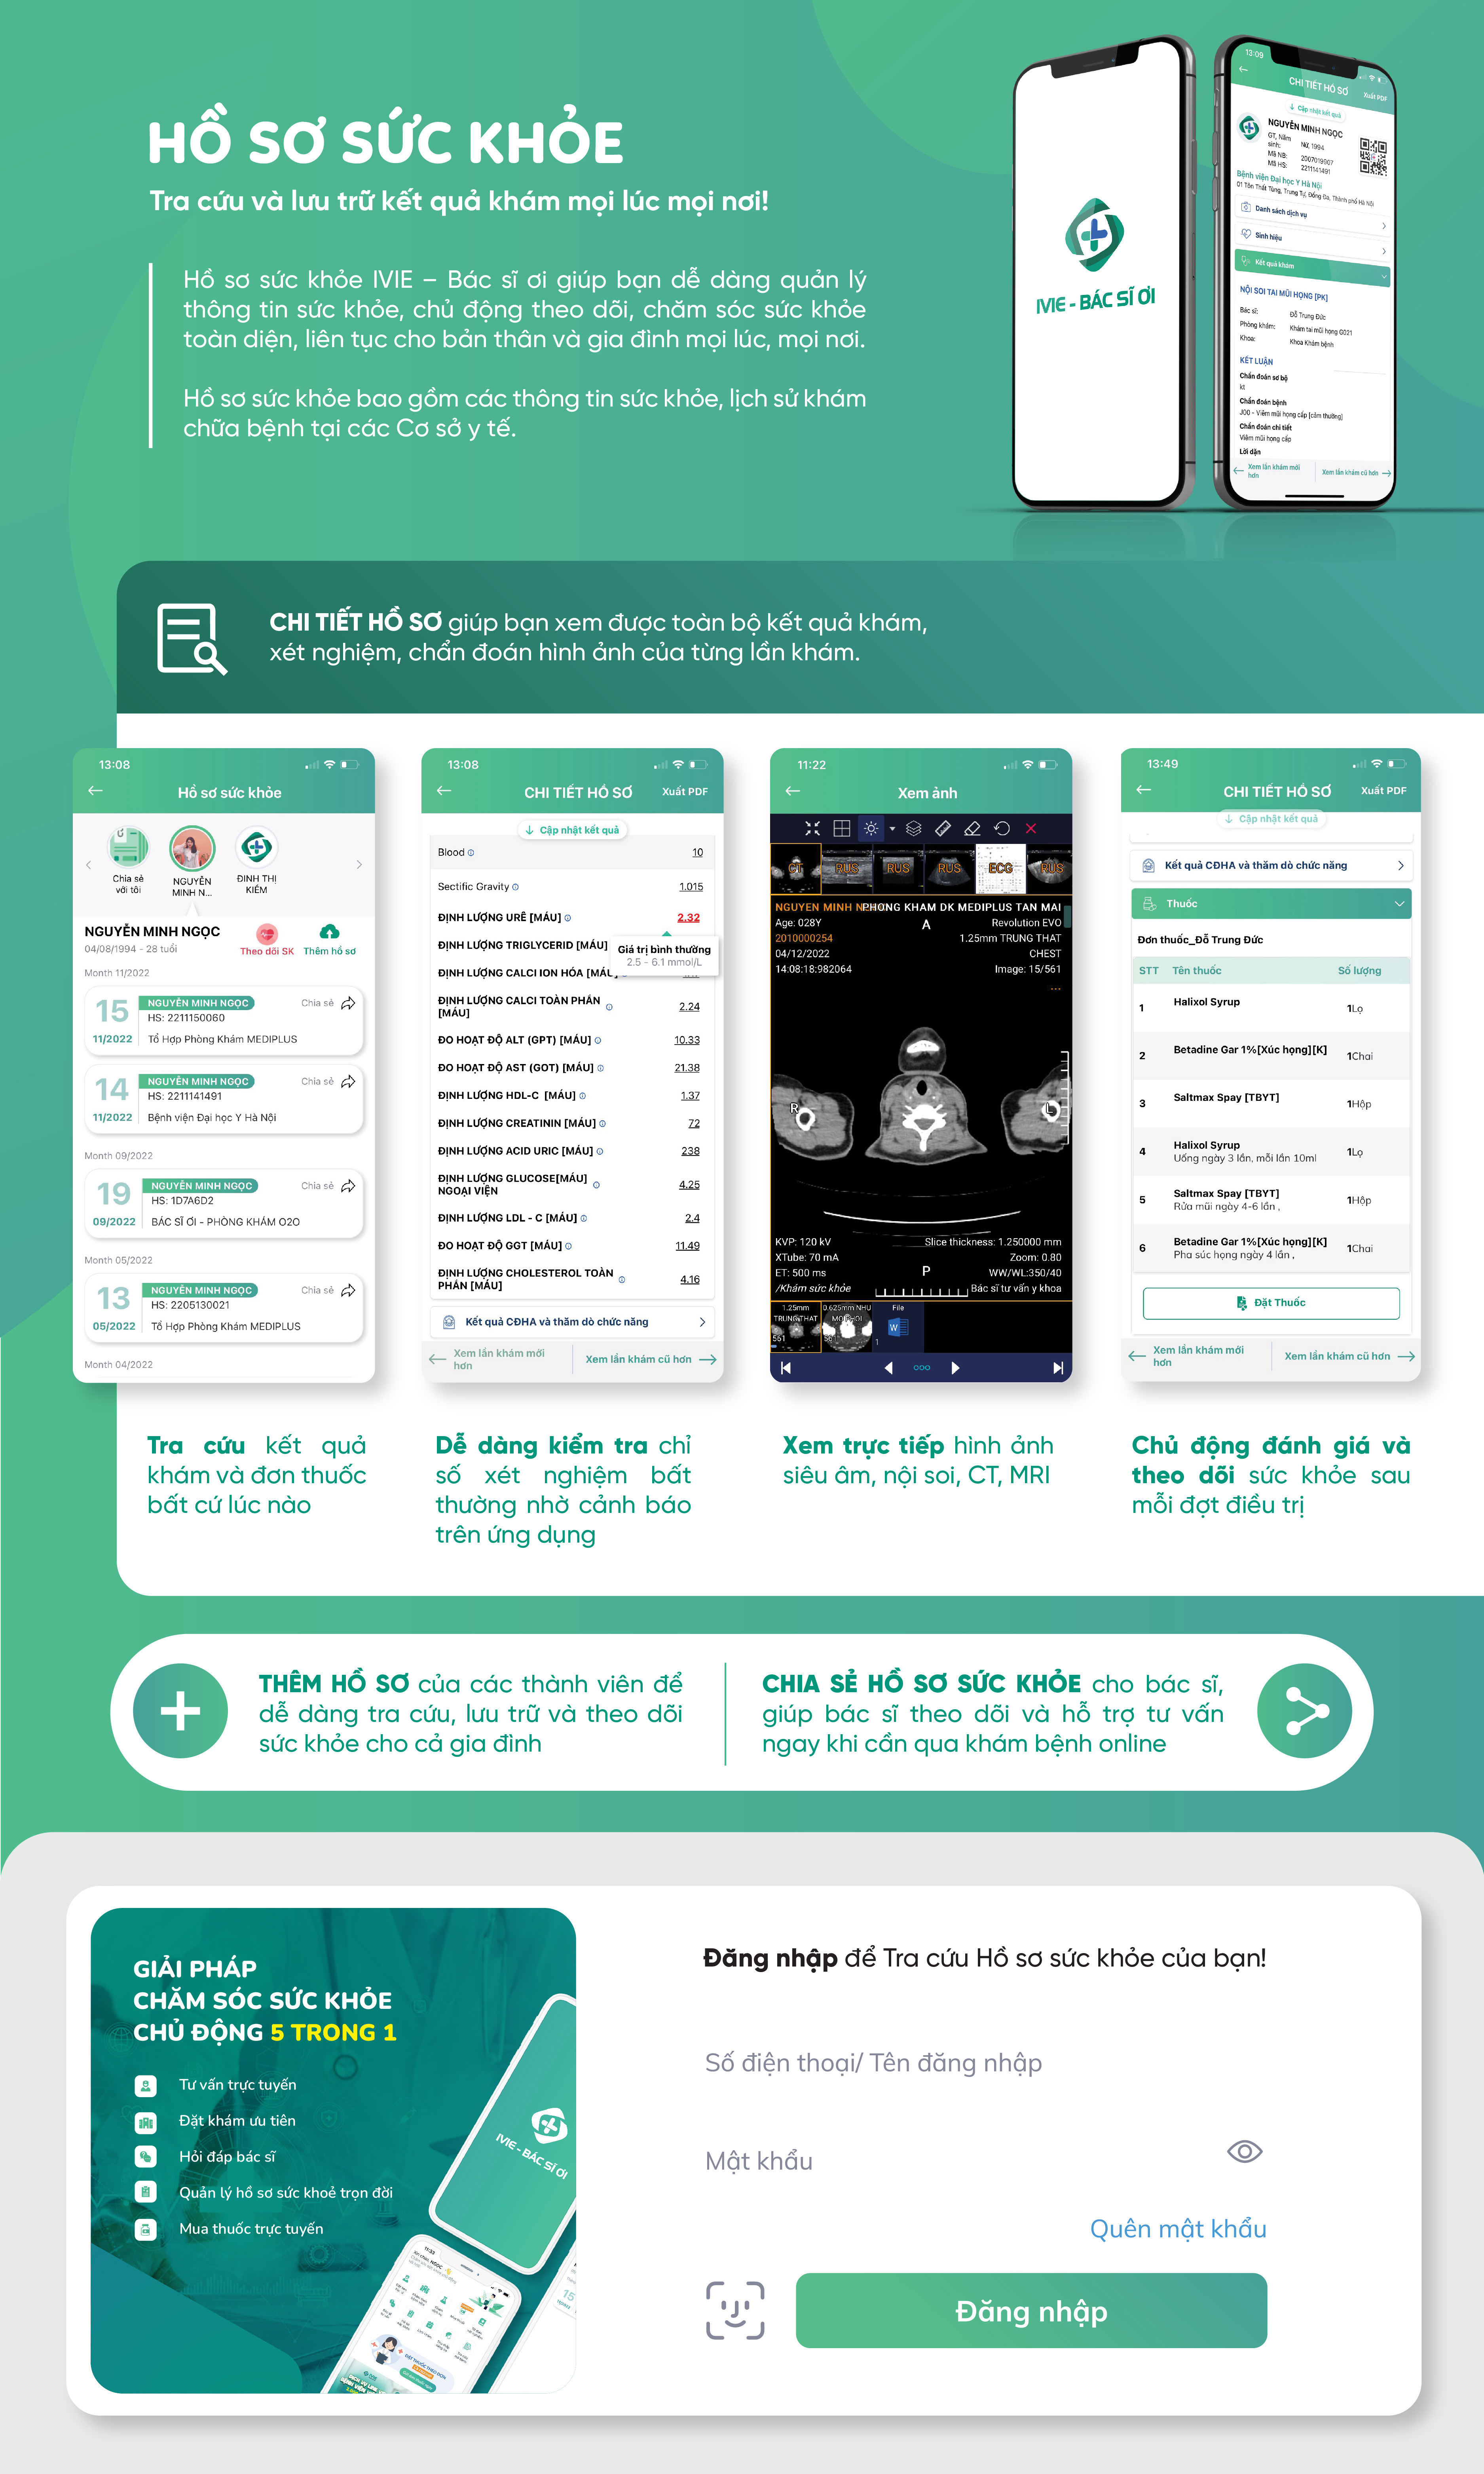 Hồ sơ sức khỏe trên app khám bệnh online IVIE - Bác sĩ ơi